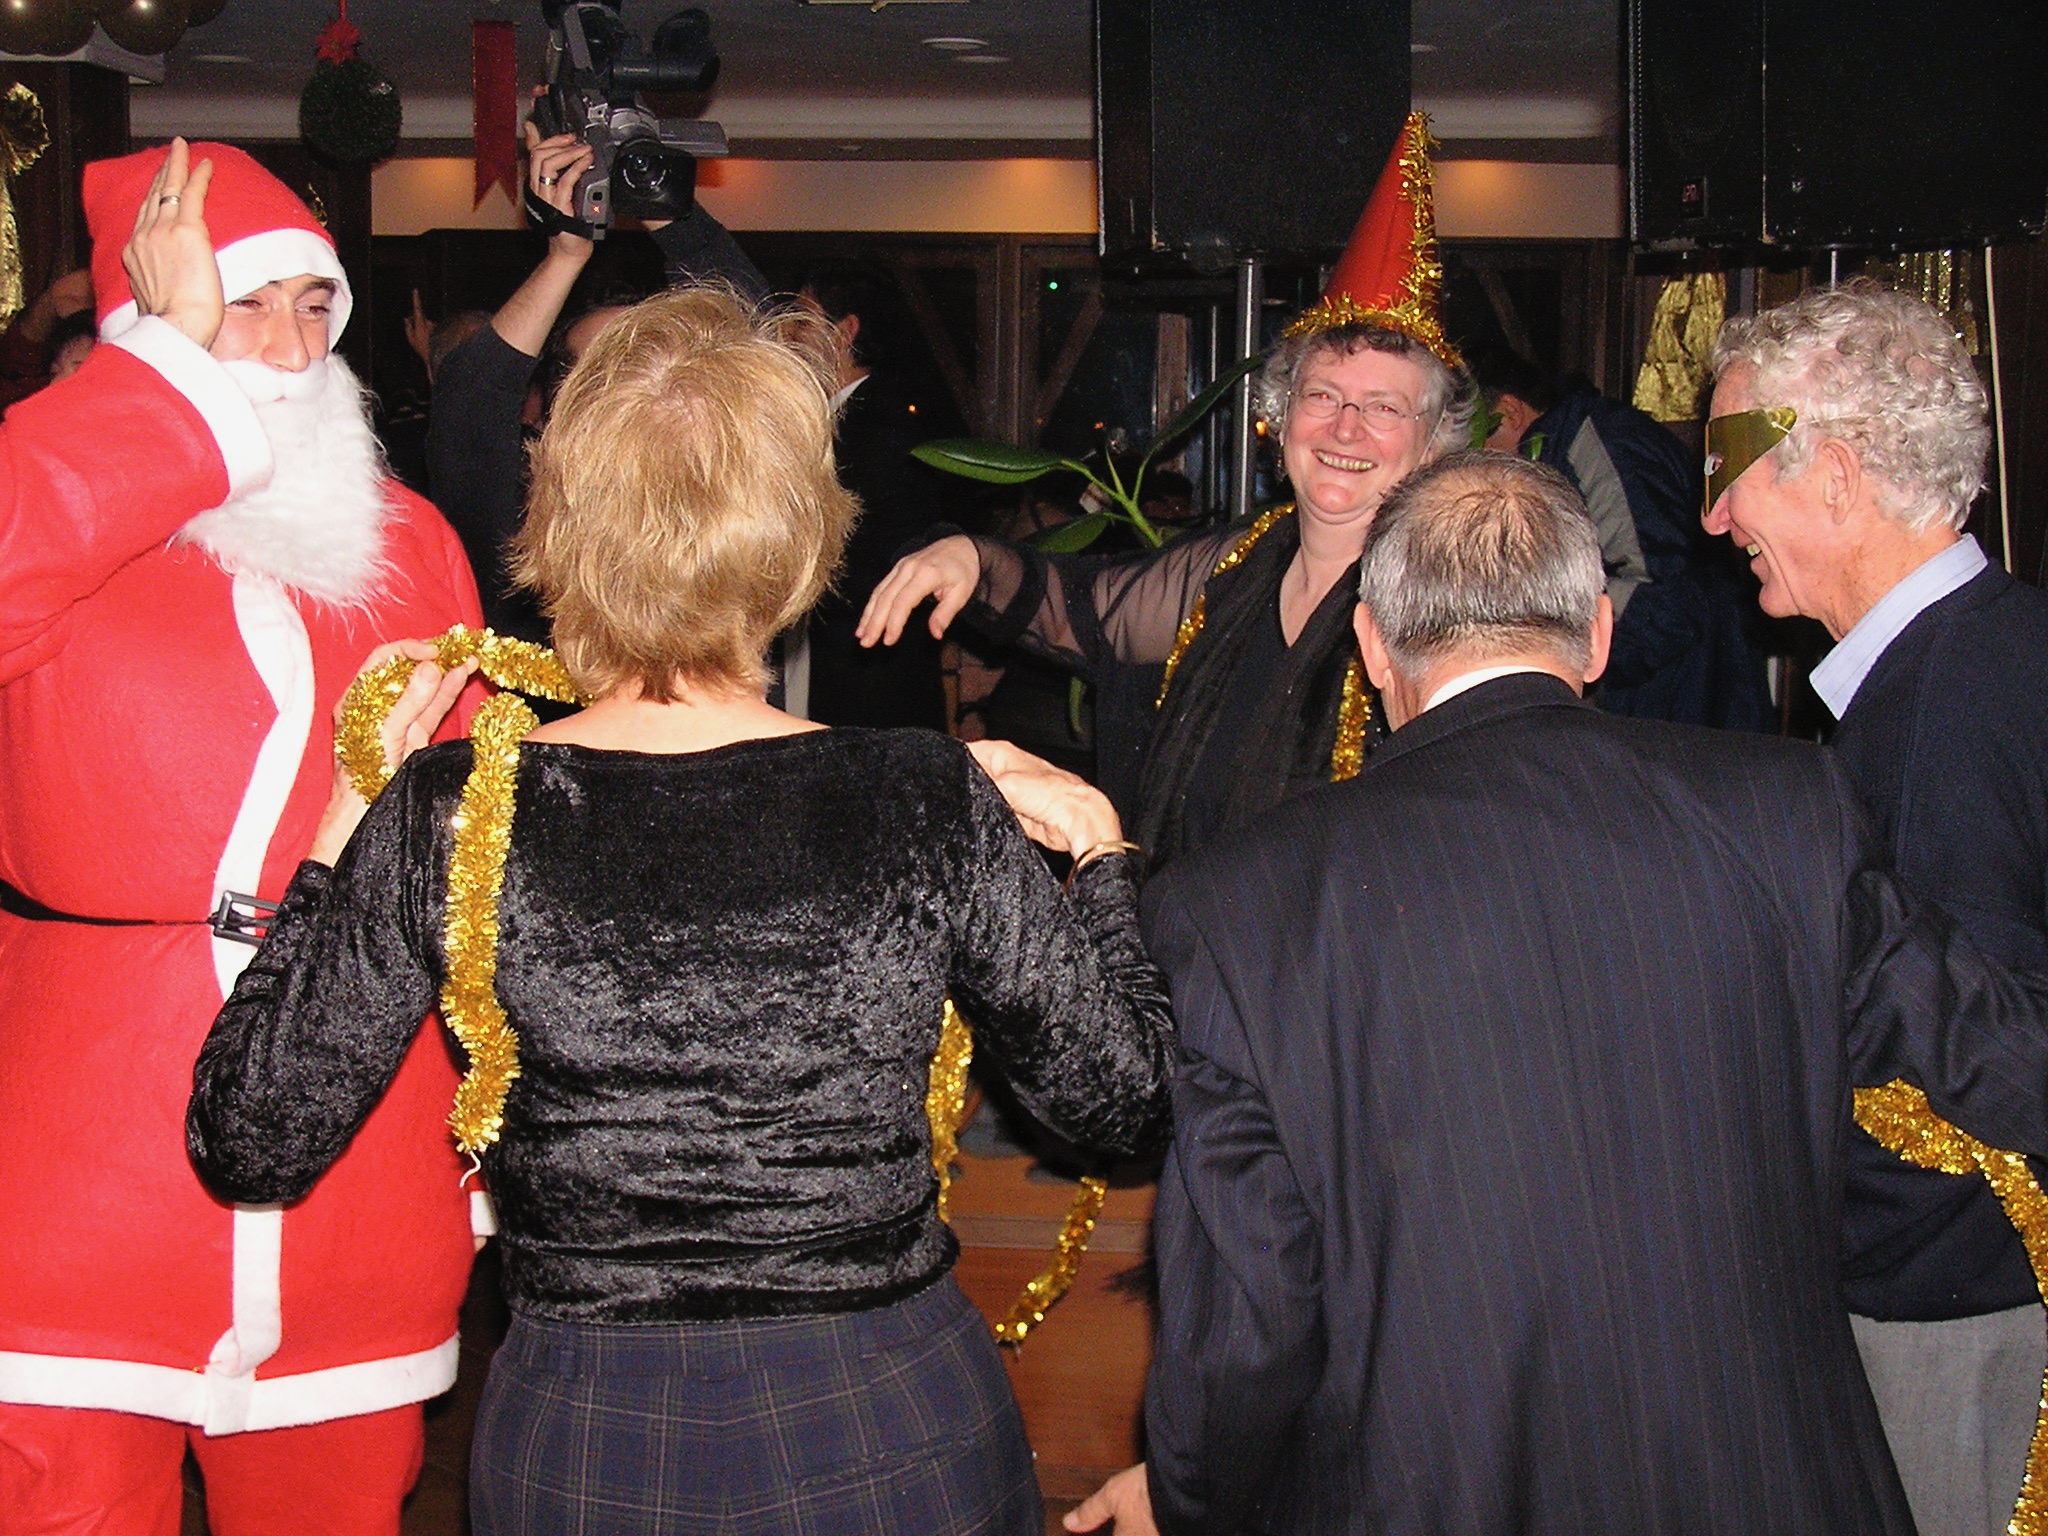 Santa dancing with us